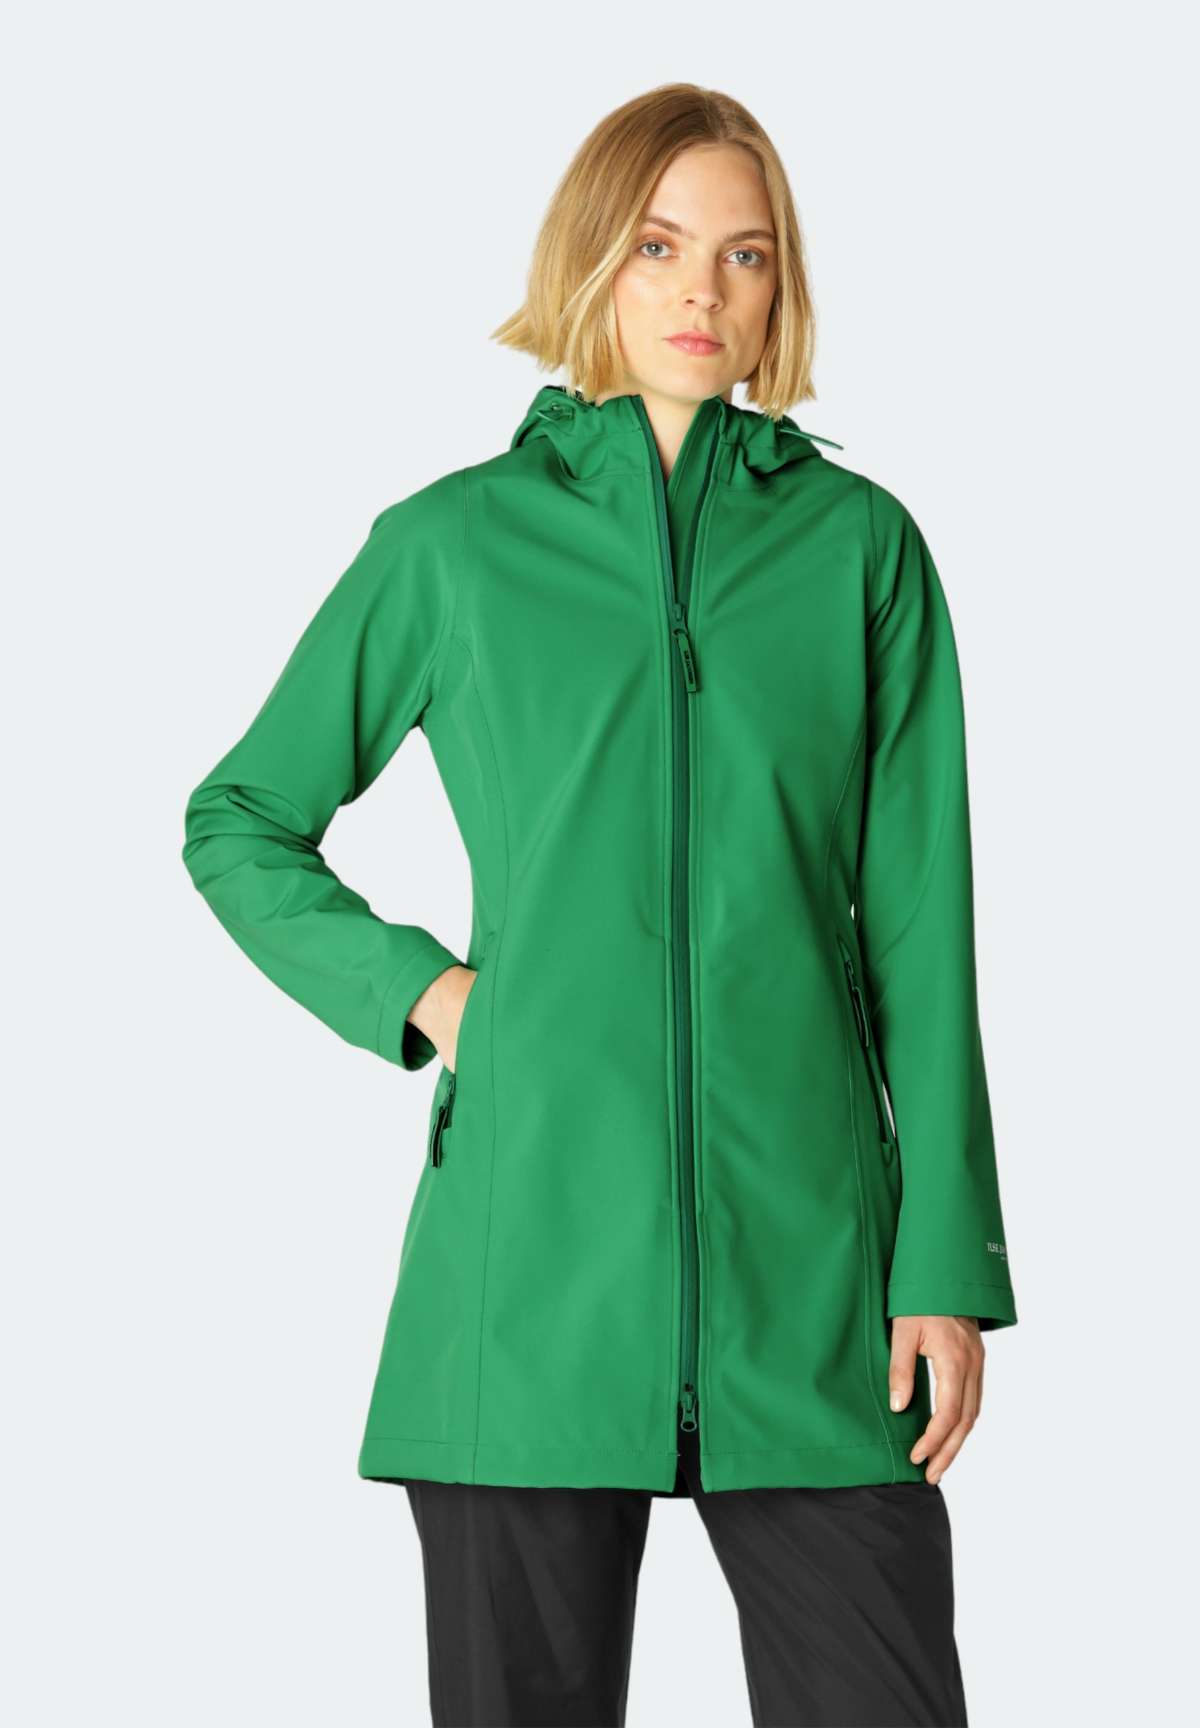 Куртка от дождя и грязи, современная всепогодная куртка из софтшелла, дышащая,...